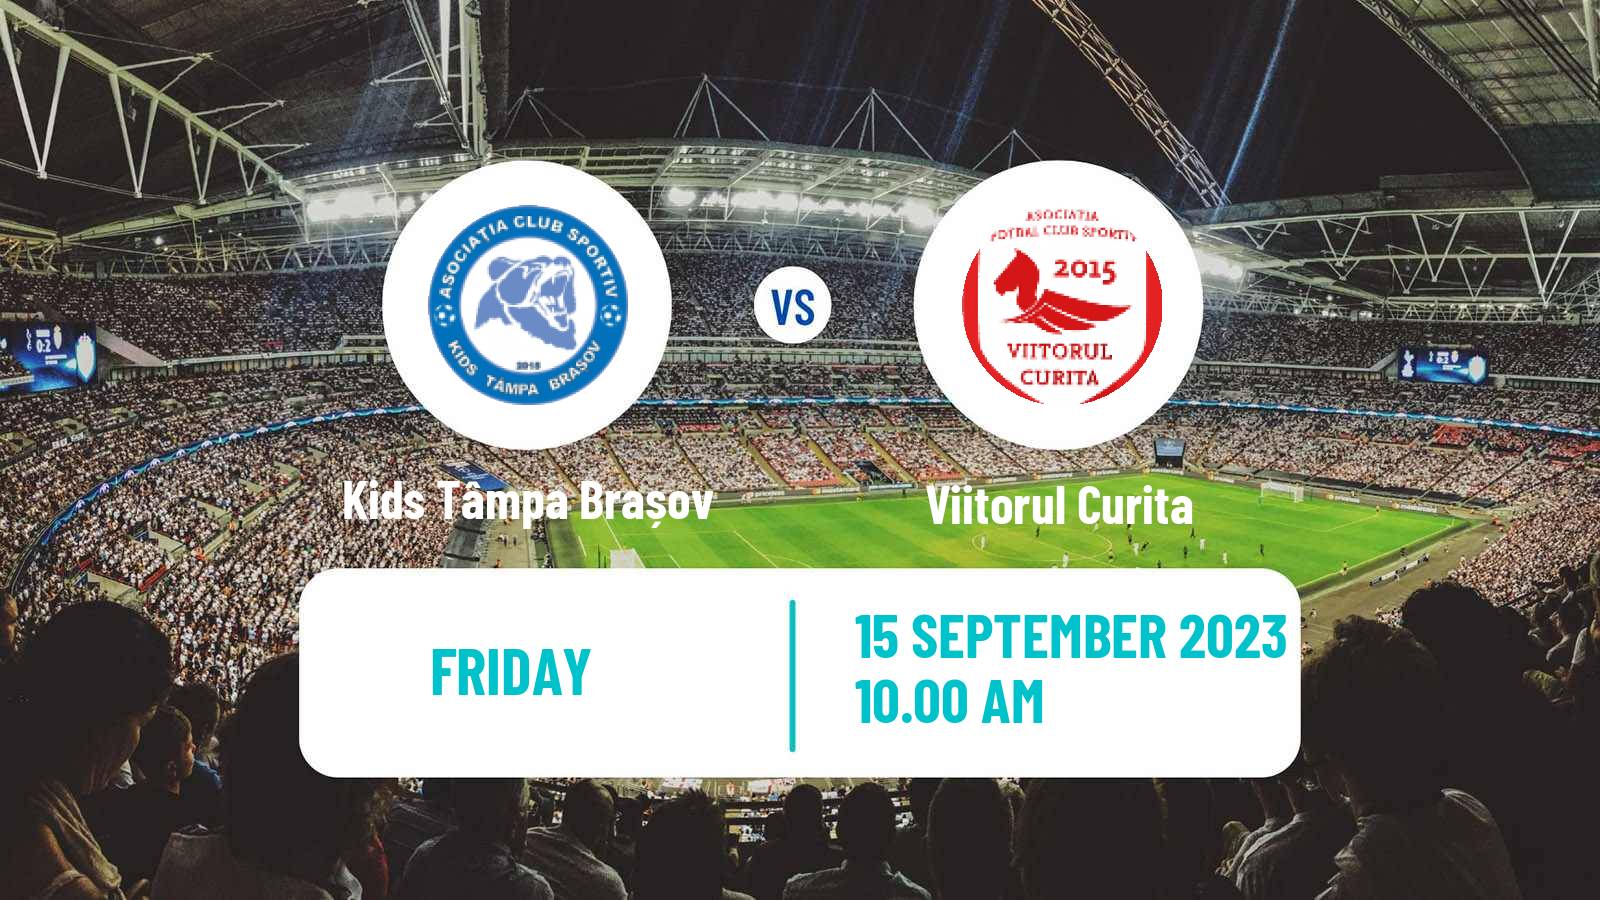 Soccer Romanian Liga 3 - Seria 5 Kids Tâmpa Brașov - Viitorul Curita